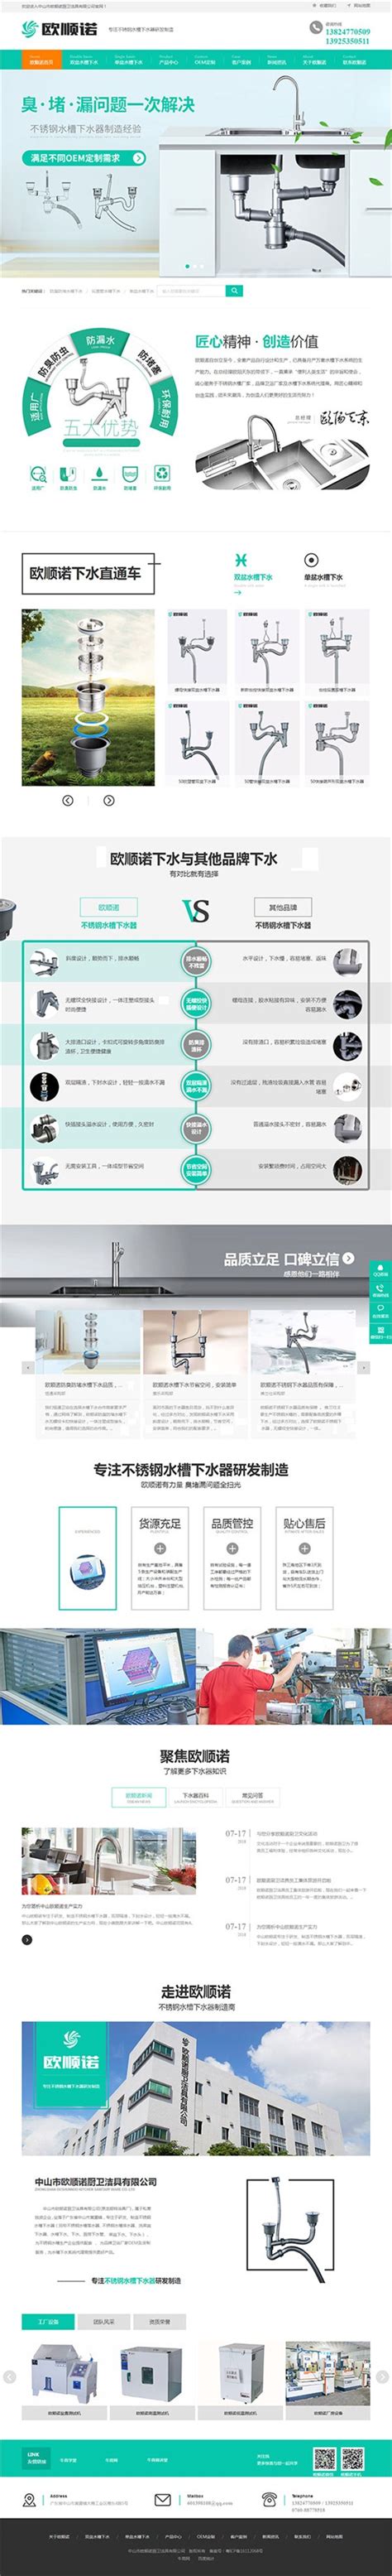 卫浴企业优化产品结构 互联网营销大放异彩-中国建材家居网